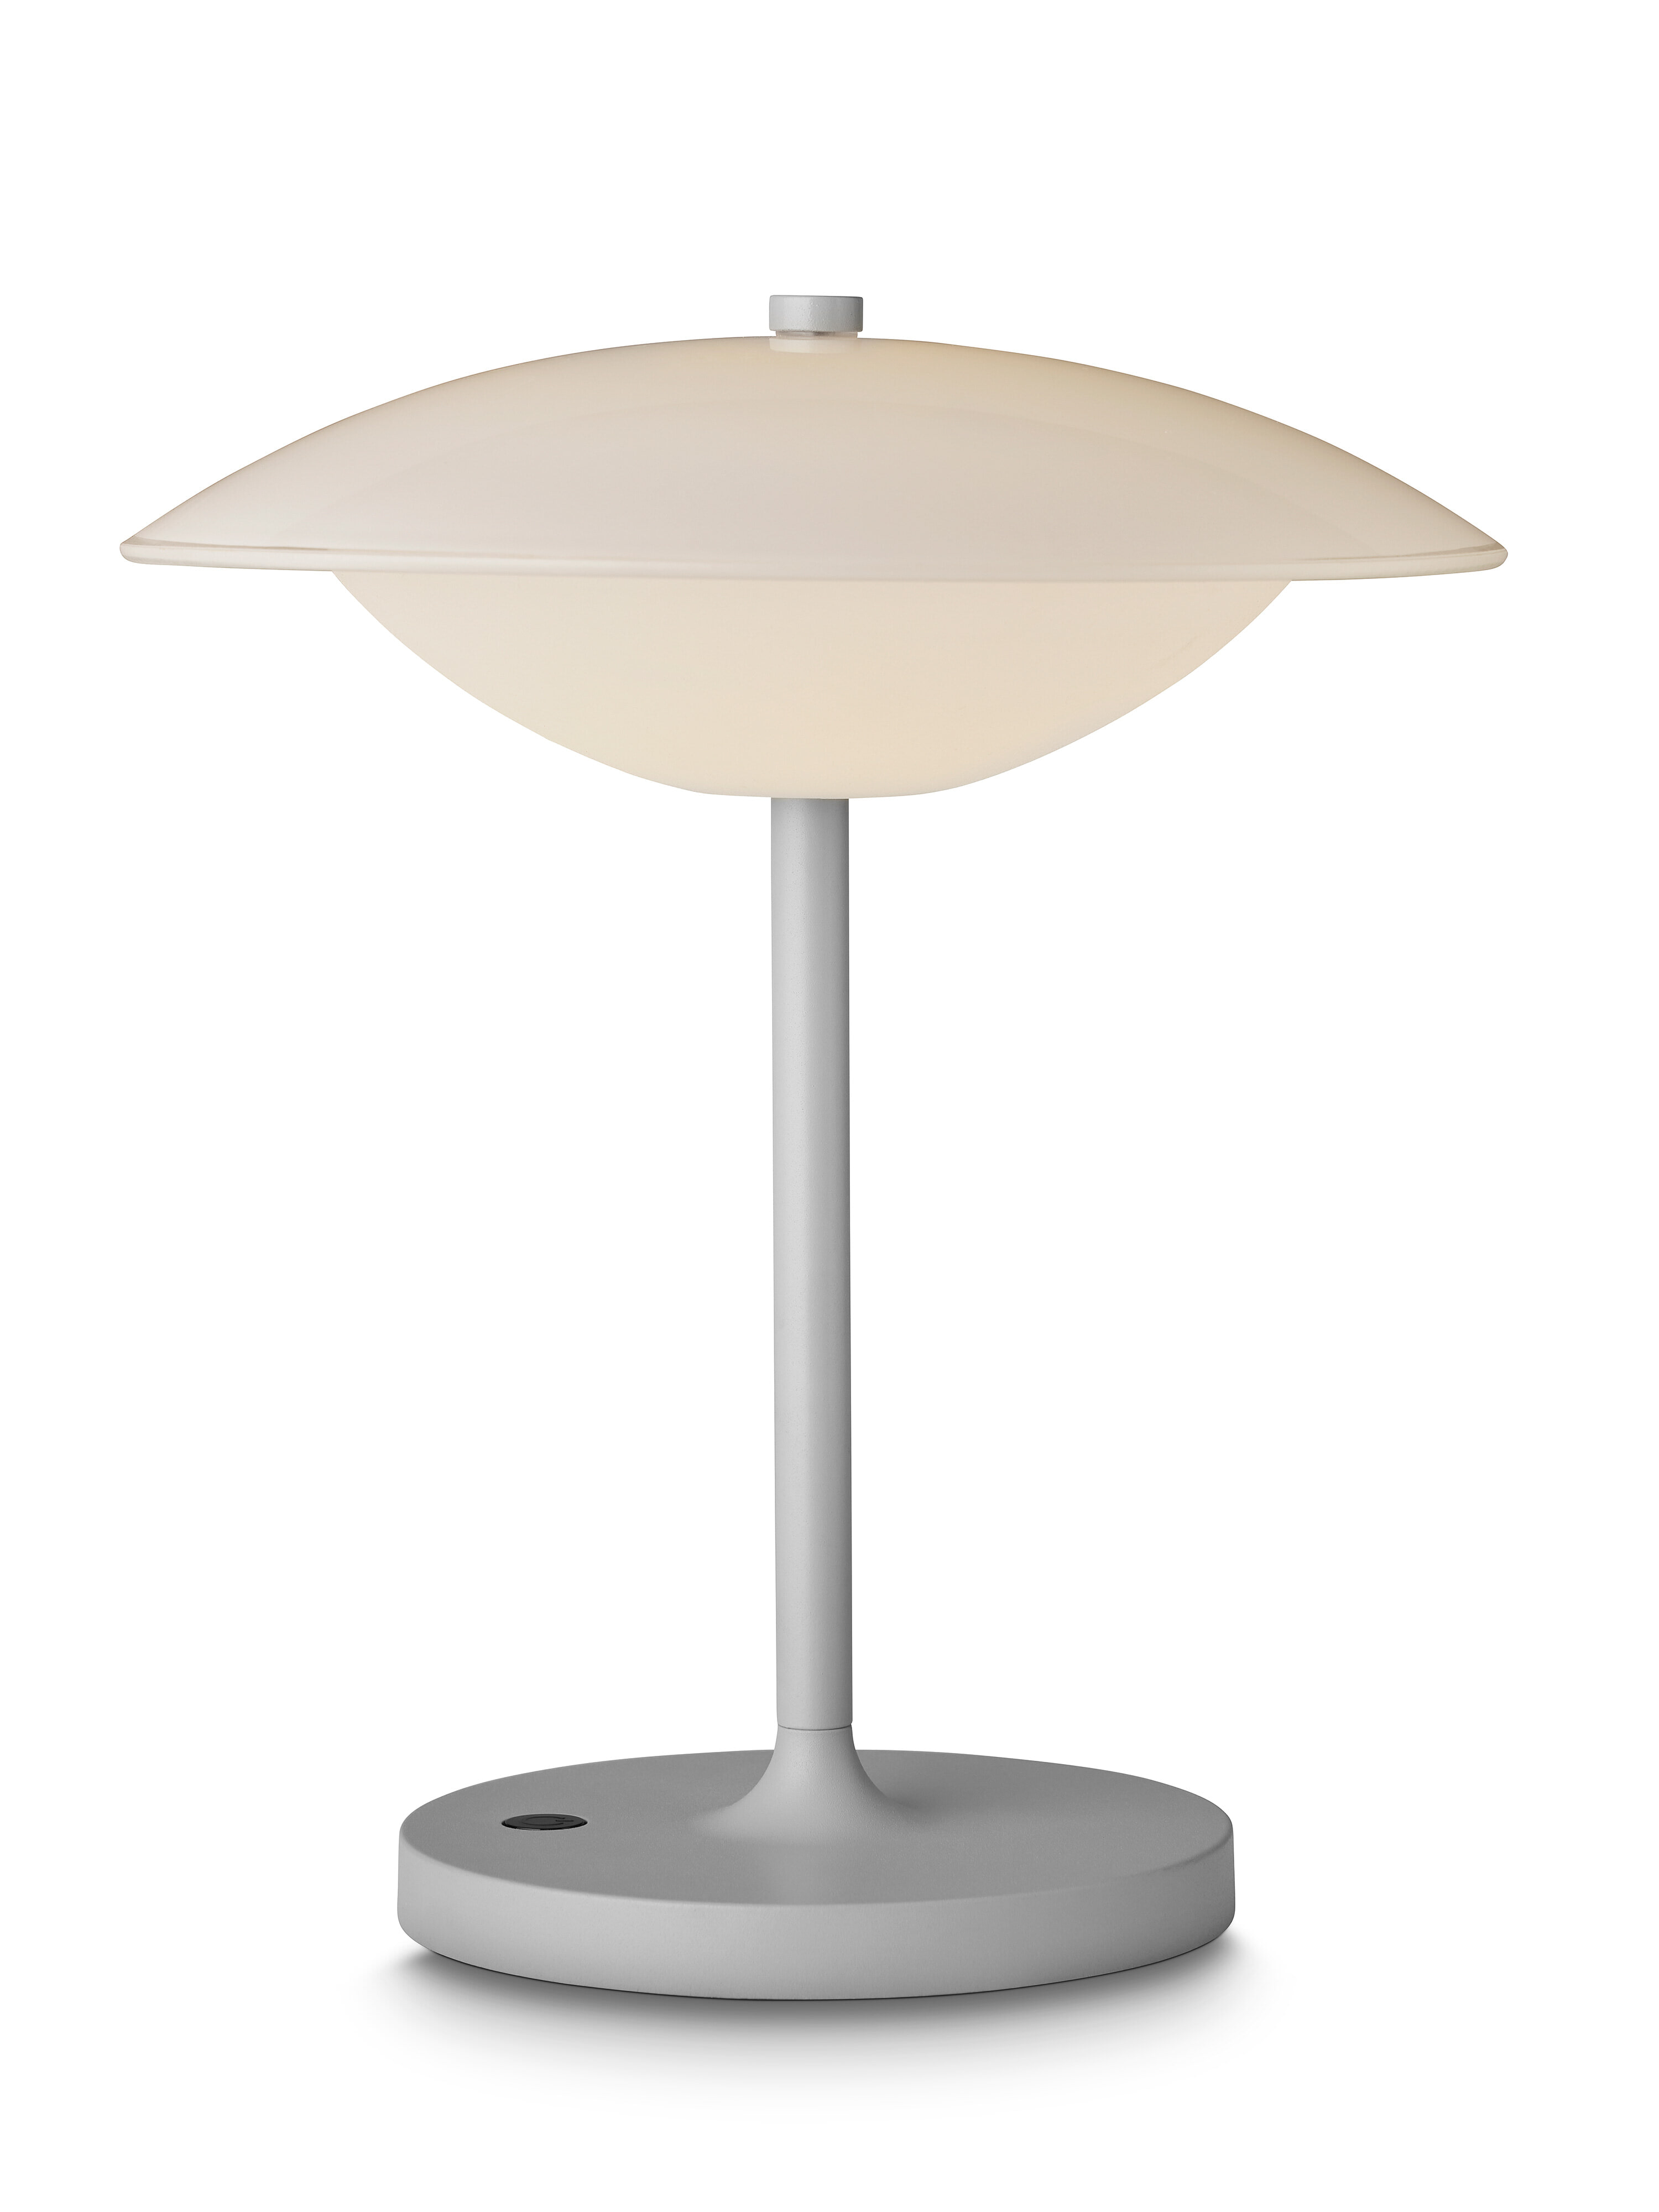 Halo Design Tafellamp 'Baroni Move' Oplaadbaar, 26cm, kleur Warmgrijs